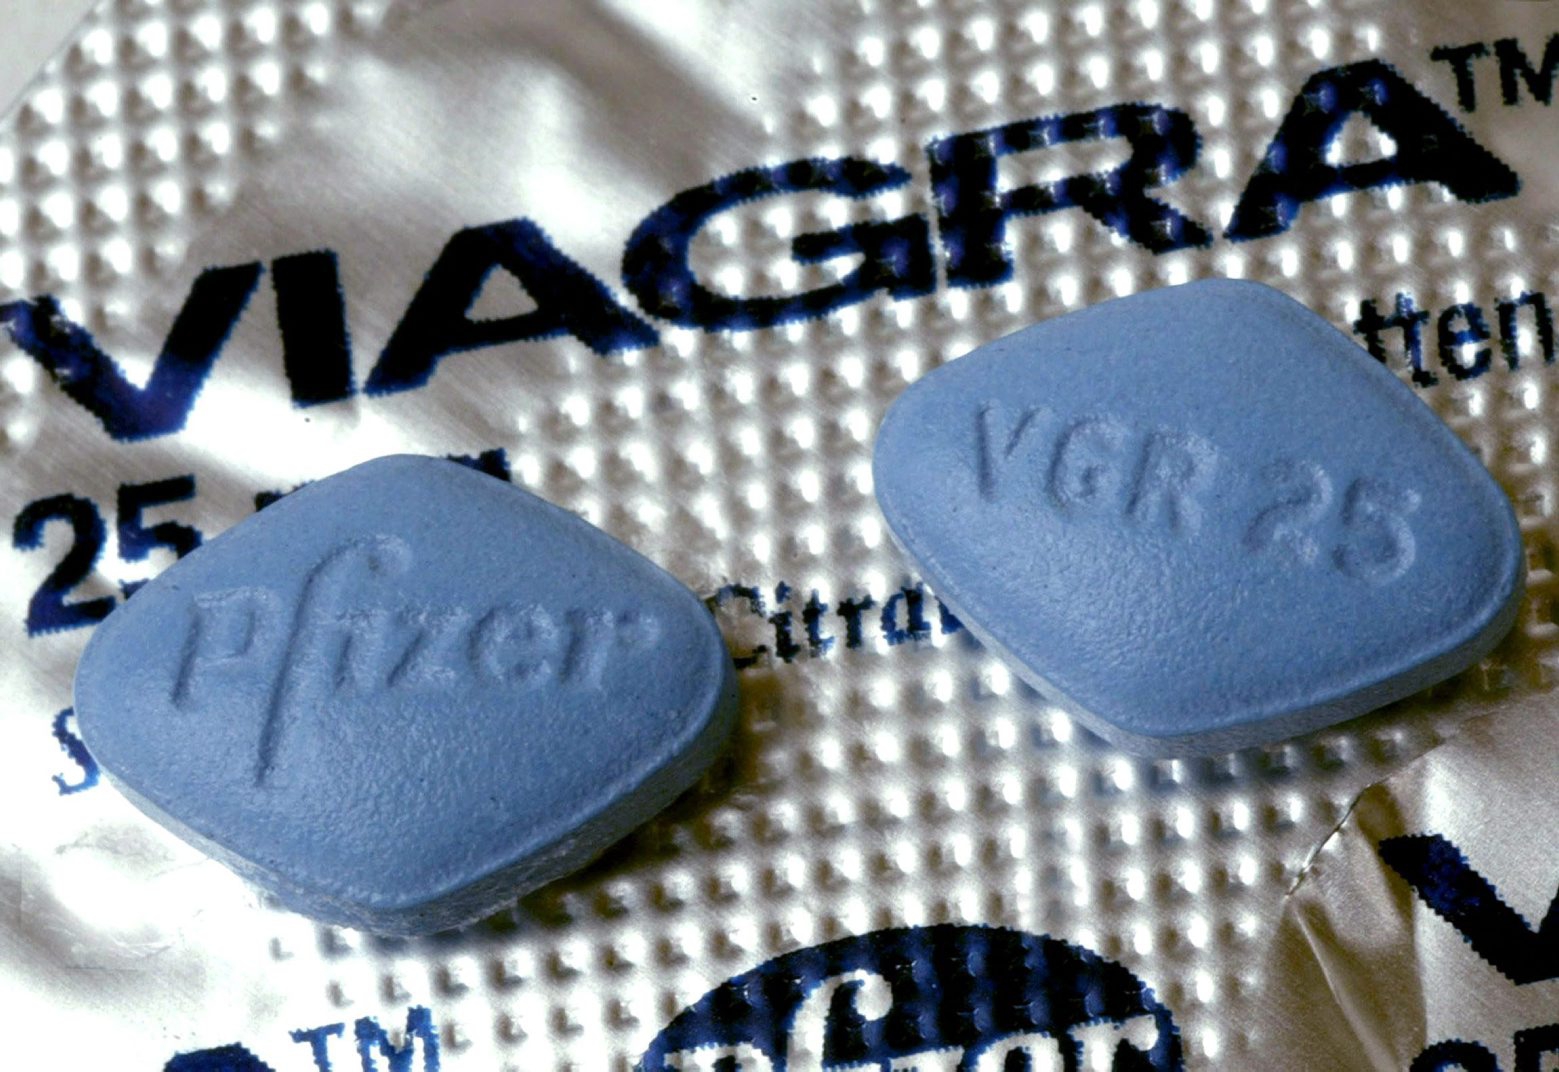 ARCHIV - Undatiert: Zwei Tabletten Viagra liegen auf der Medikamentenverpackung. (zu dpa ´Das blaue Wunder im Bett: 20 Jahre Viagraª vom 19.03.2018) (KEYSTONE/DPA/Uli Deck) DEUTSCHLAND VIAGRA